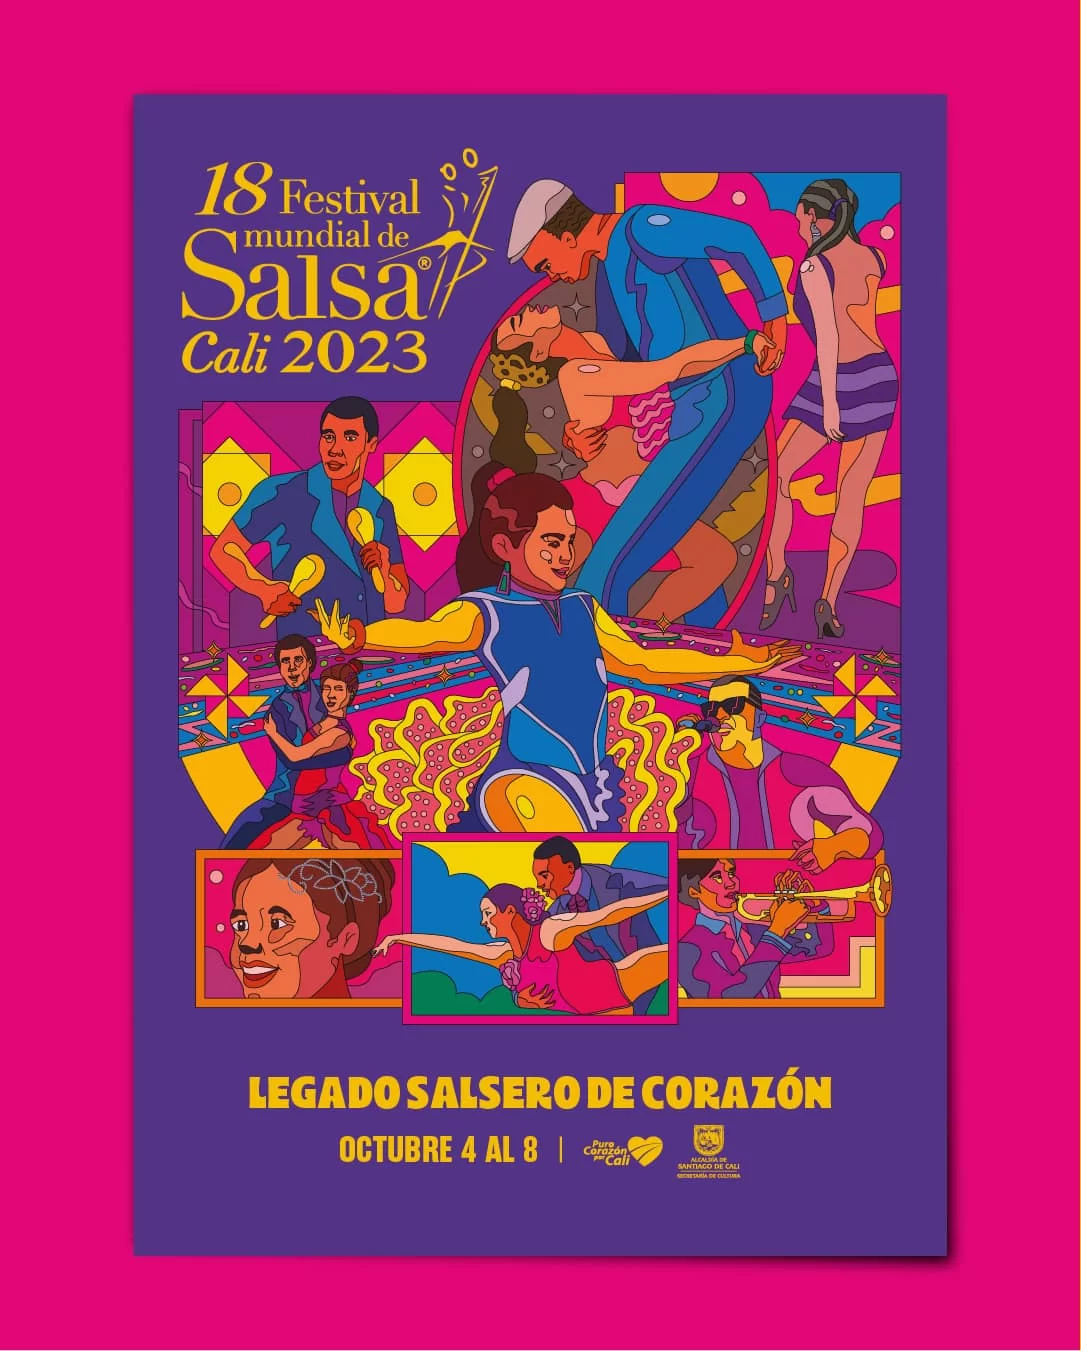 Festival mundial de salsa 2023